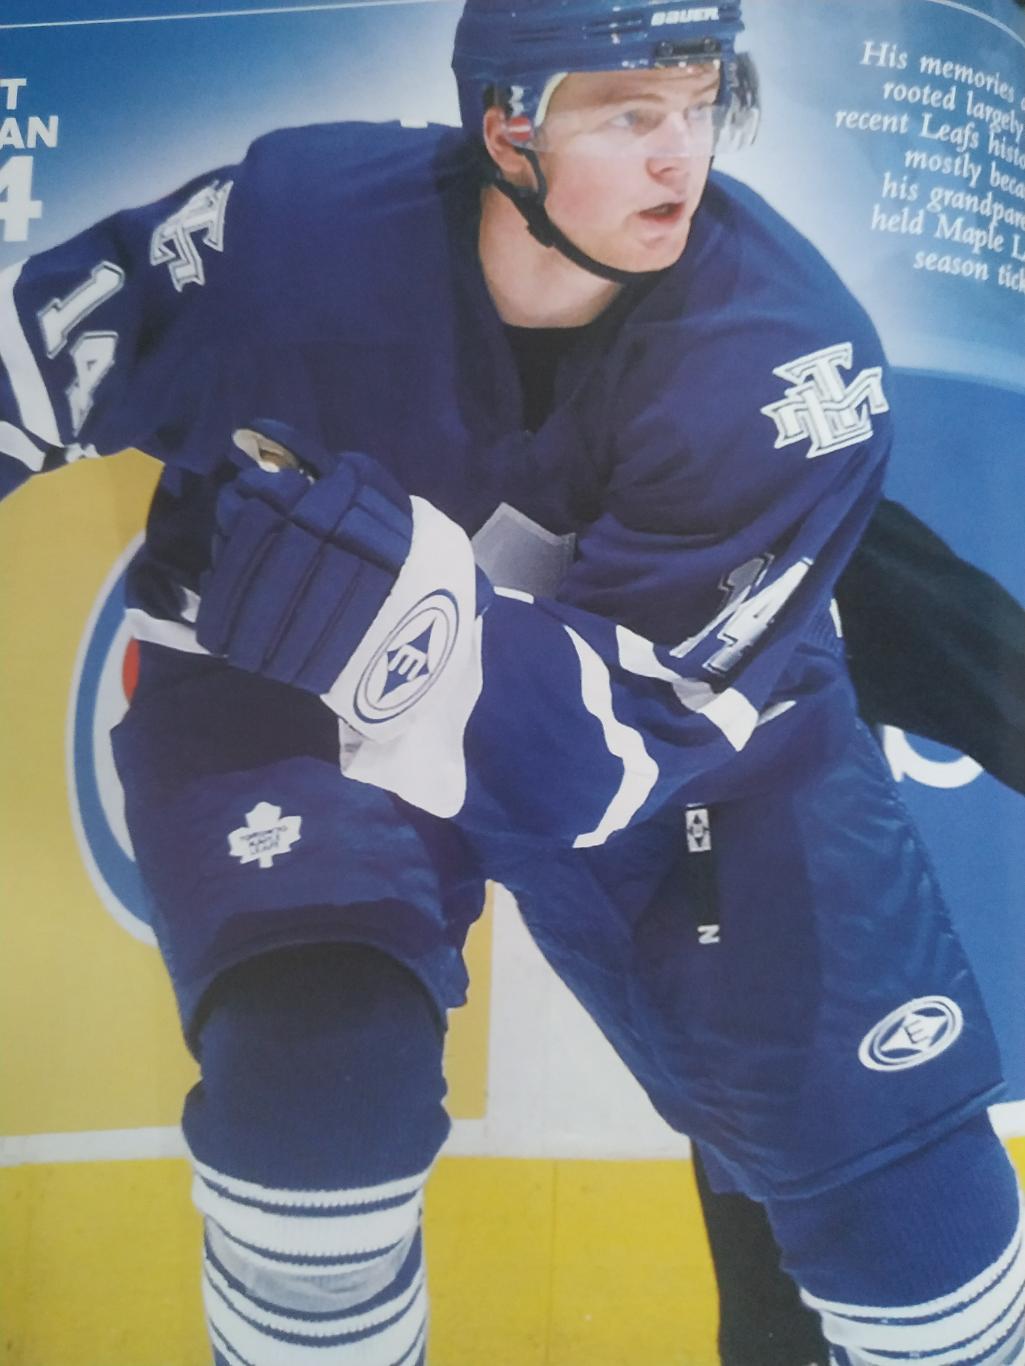 ПРОГРАММА МАТЧА ЗАЛ СЛАВЫ НХЛ 2006 NOV.11 MAPLE LEAFS VS. CANADIENS HHOF PROGRAM 3